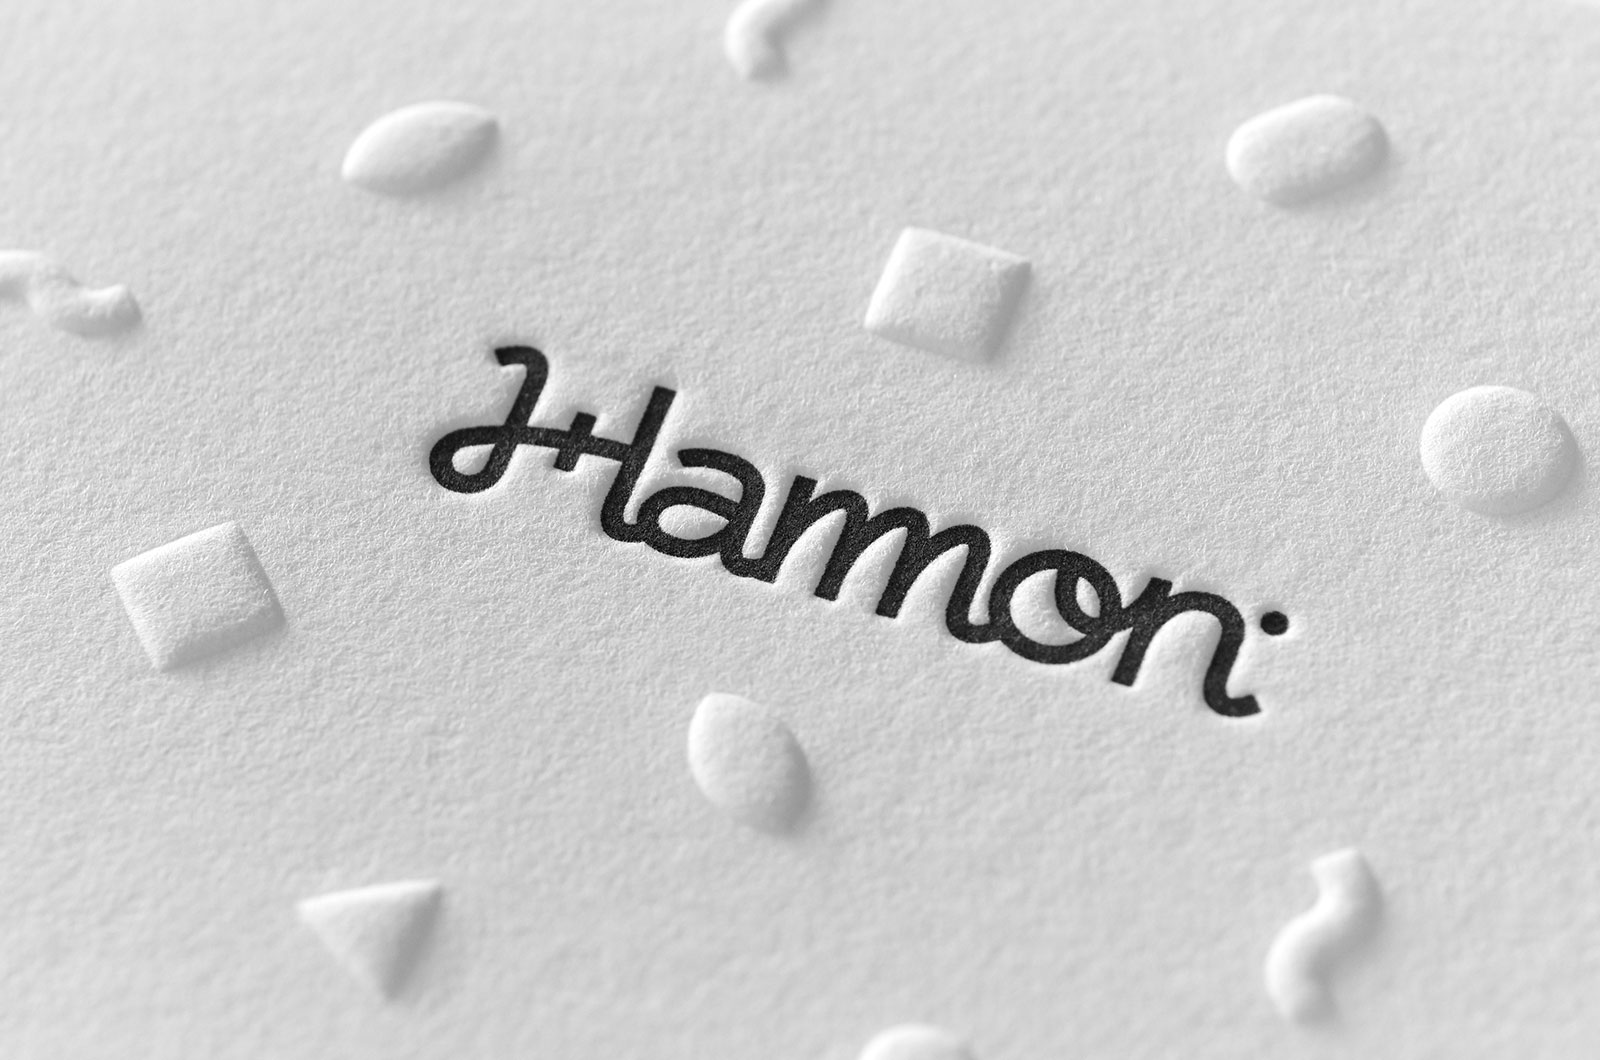 Kevin Hamon Embossed Letterpress Business Cards